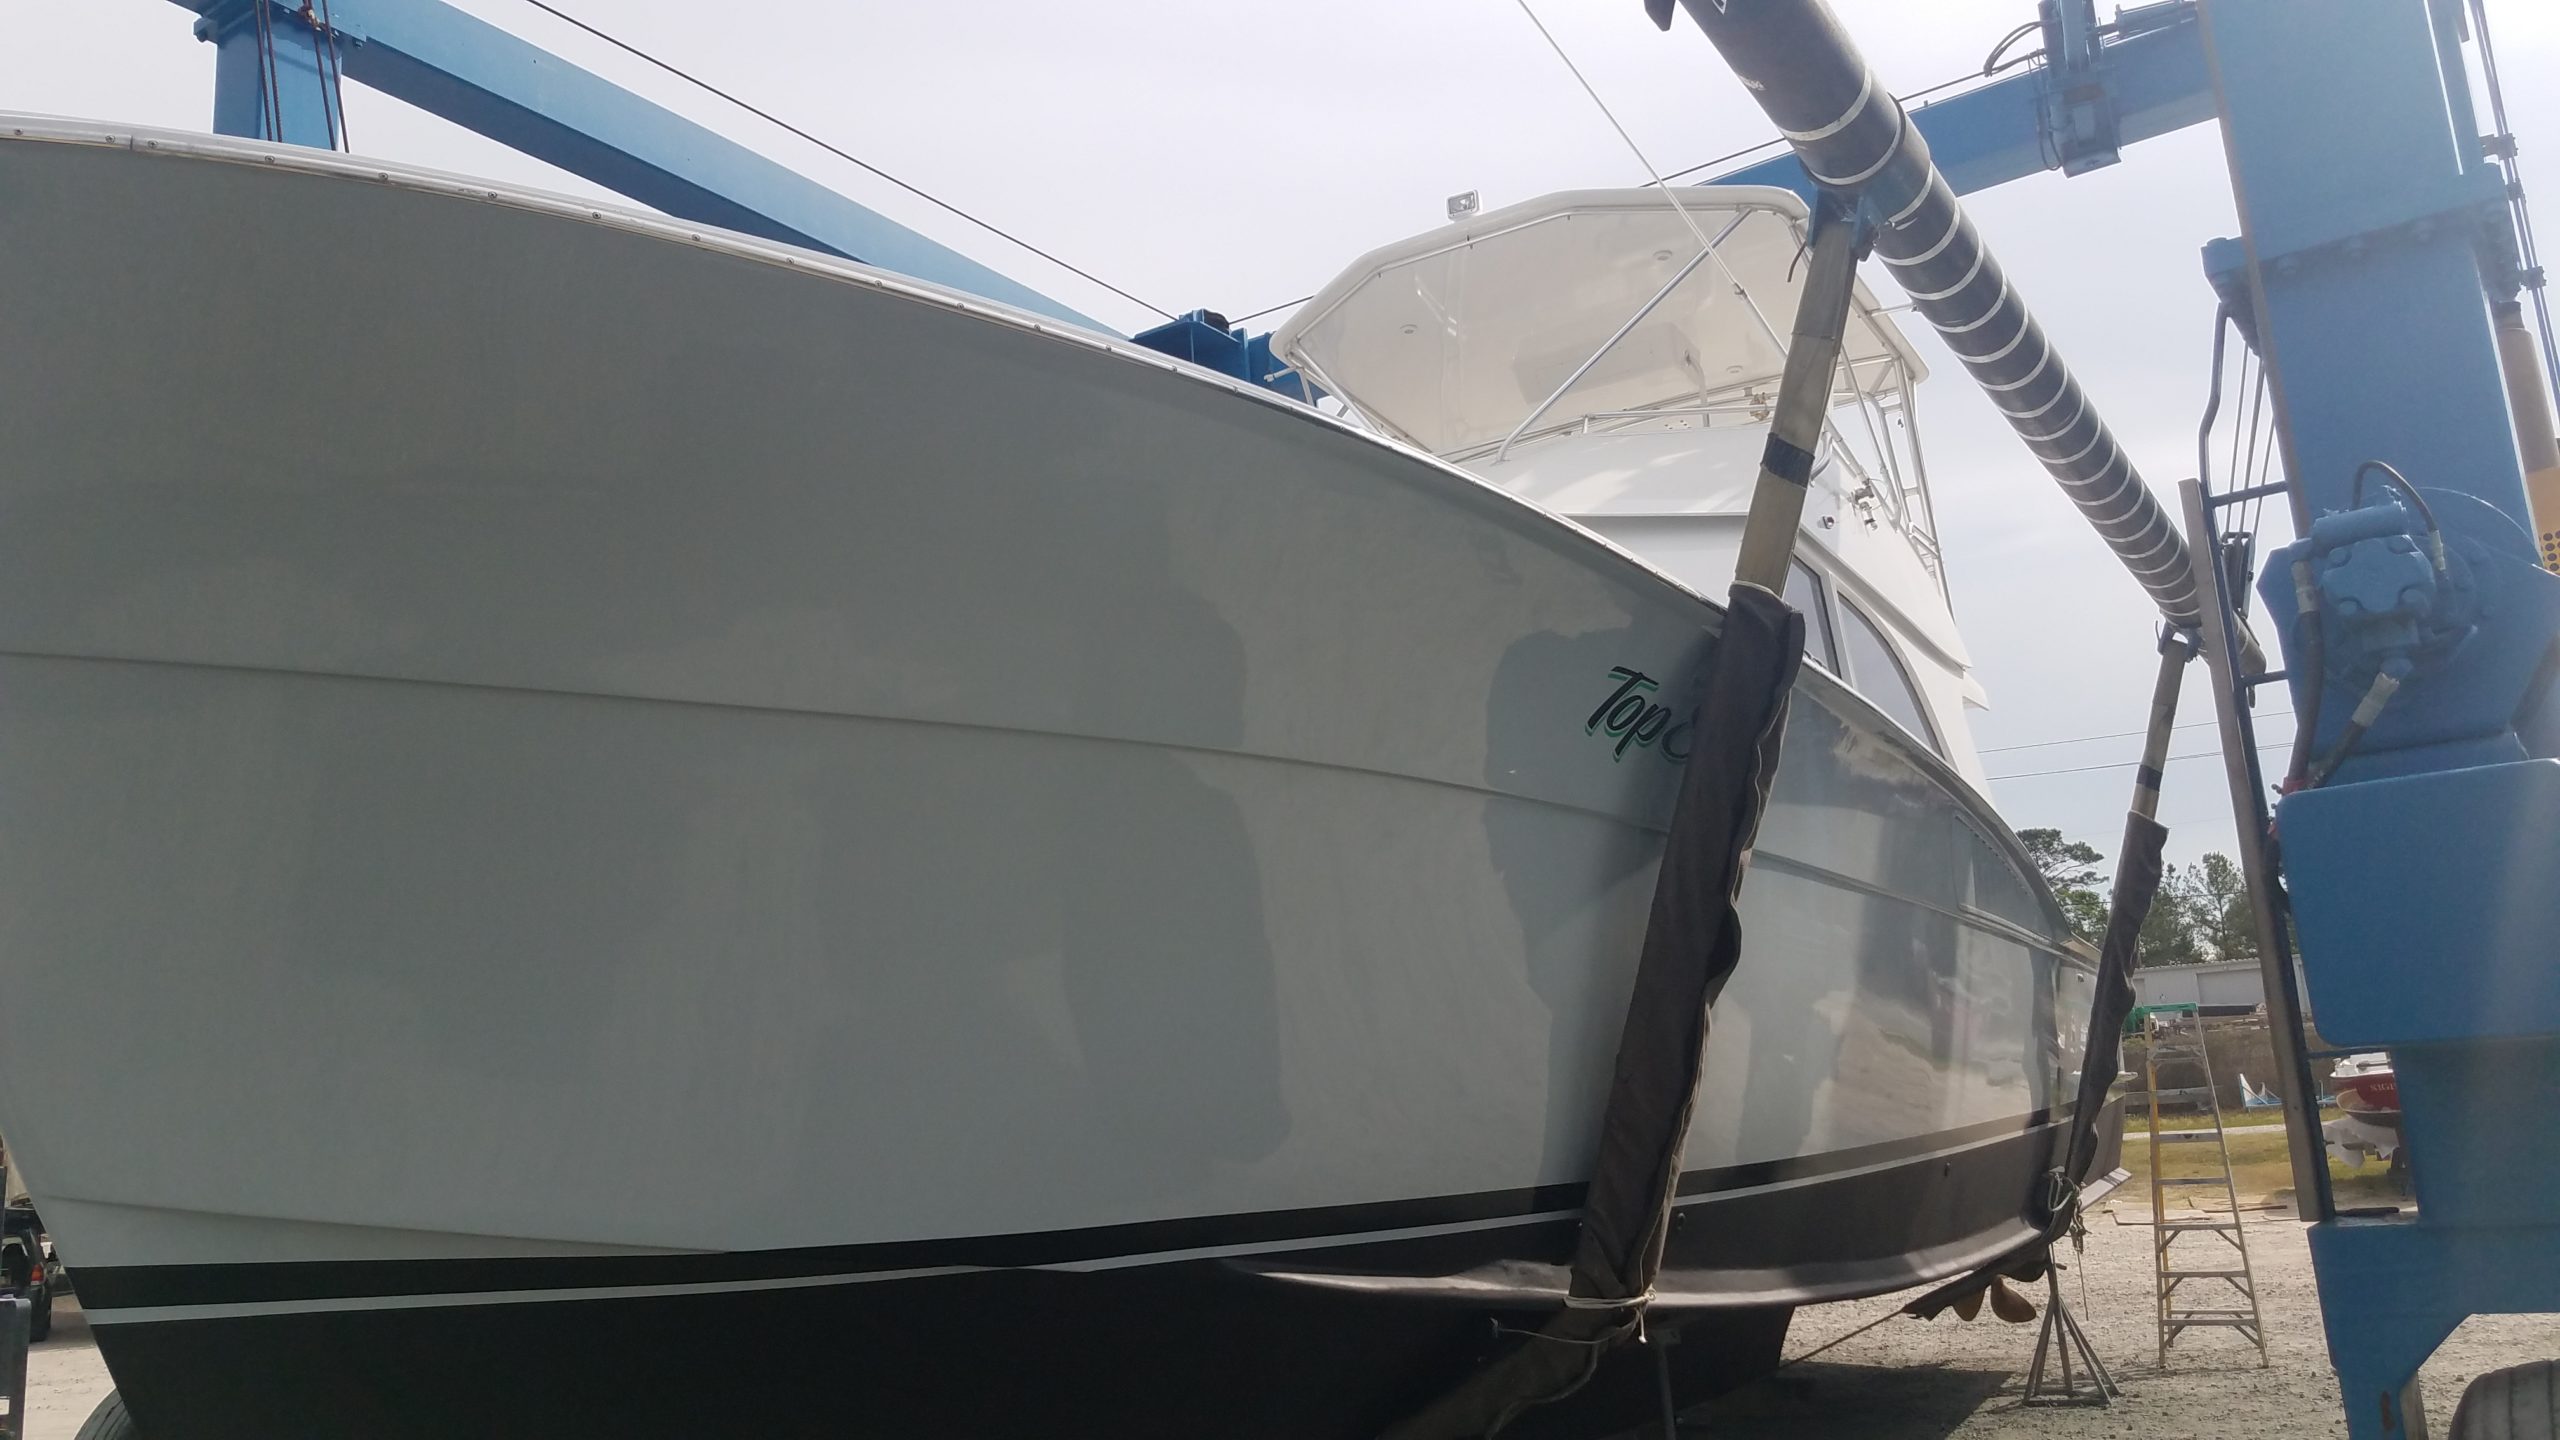 MARINE TEX: repairing damage to fiberglass hull boat bottom 